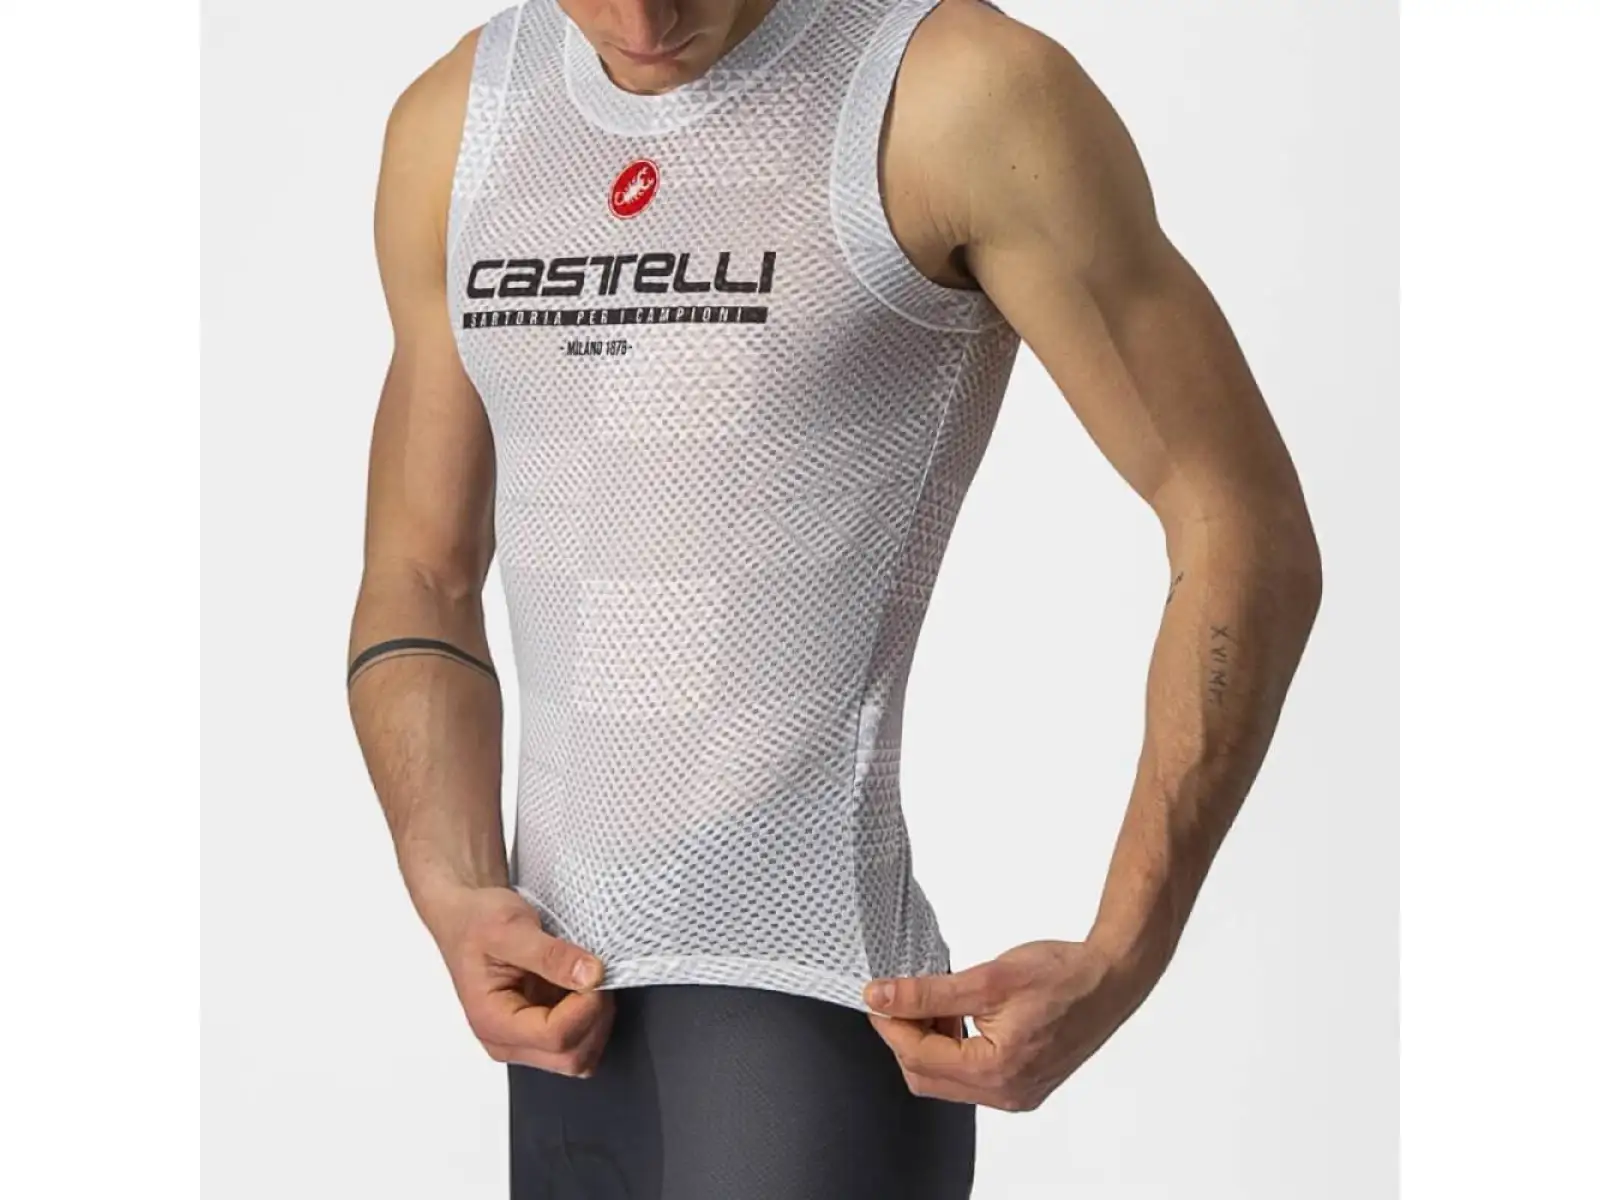 Castelli Pro Mesh BL pánské triko bez rukávů stříbřitě šedá